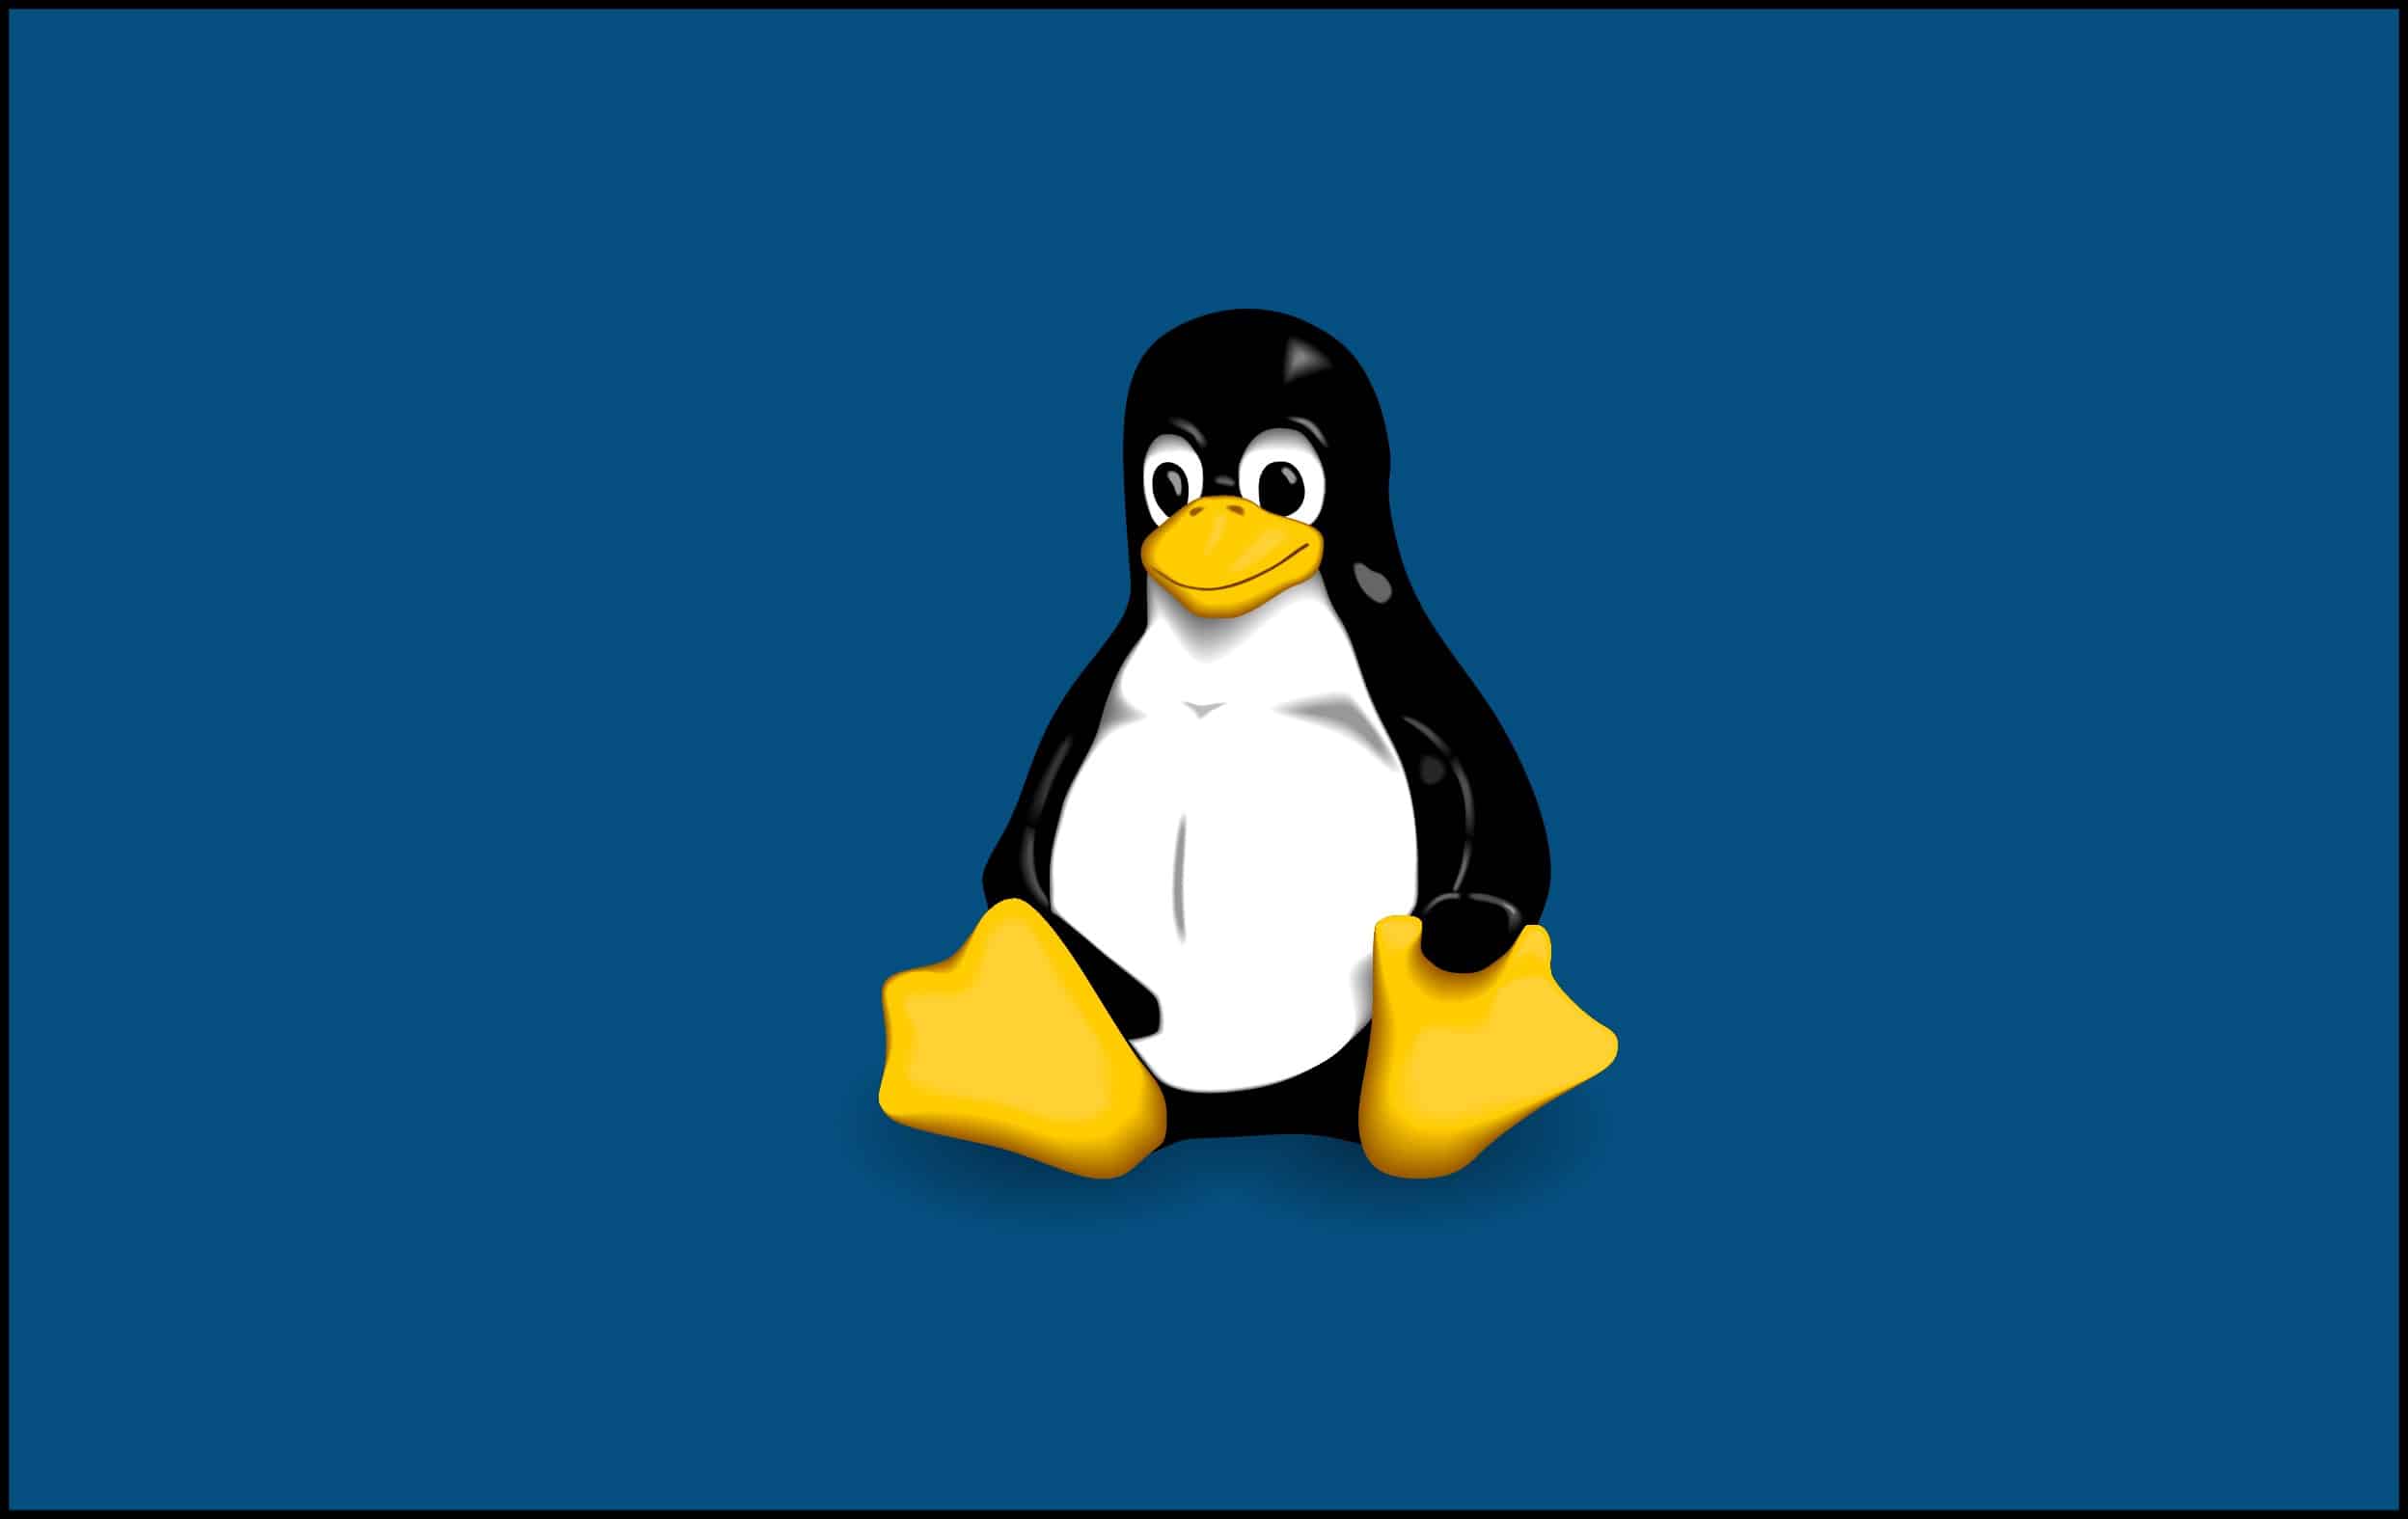 Lançada distribuição Linux NixOS 20.09